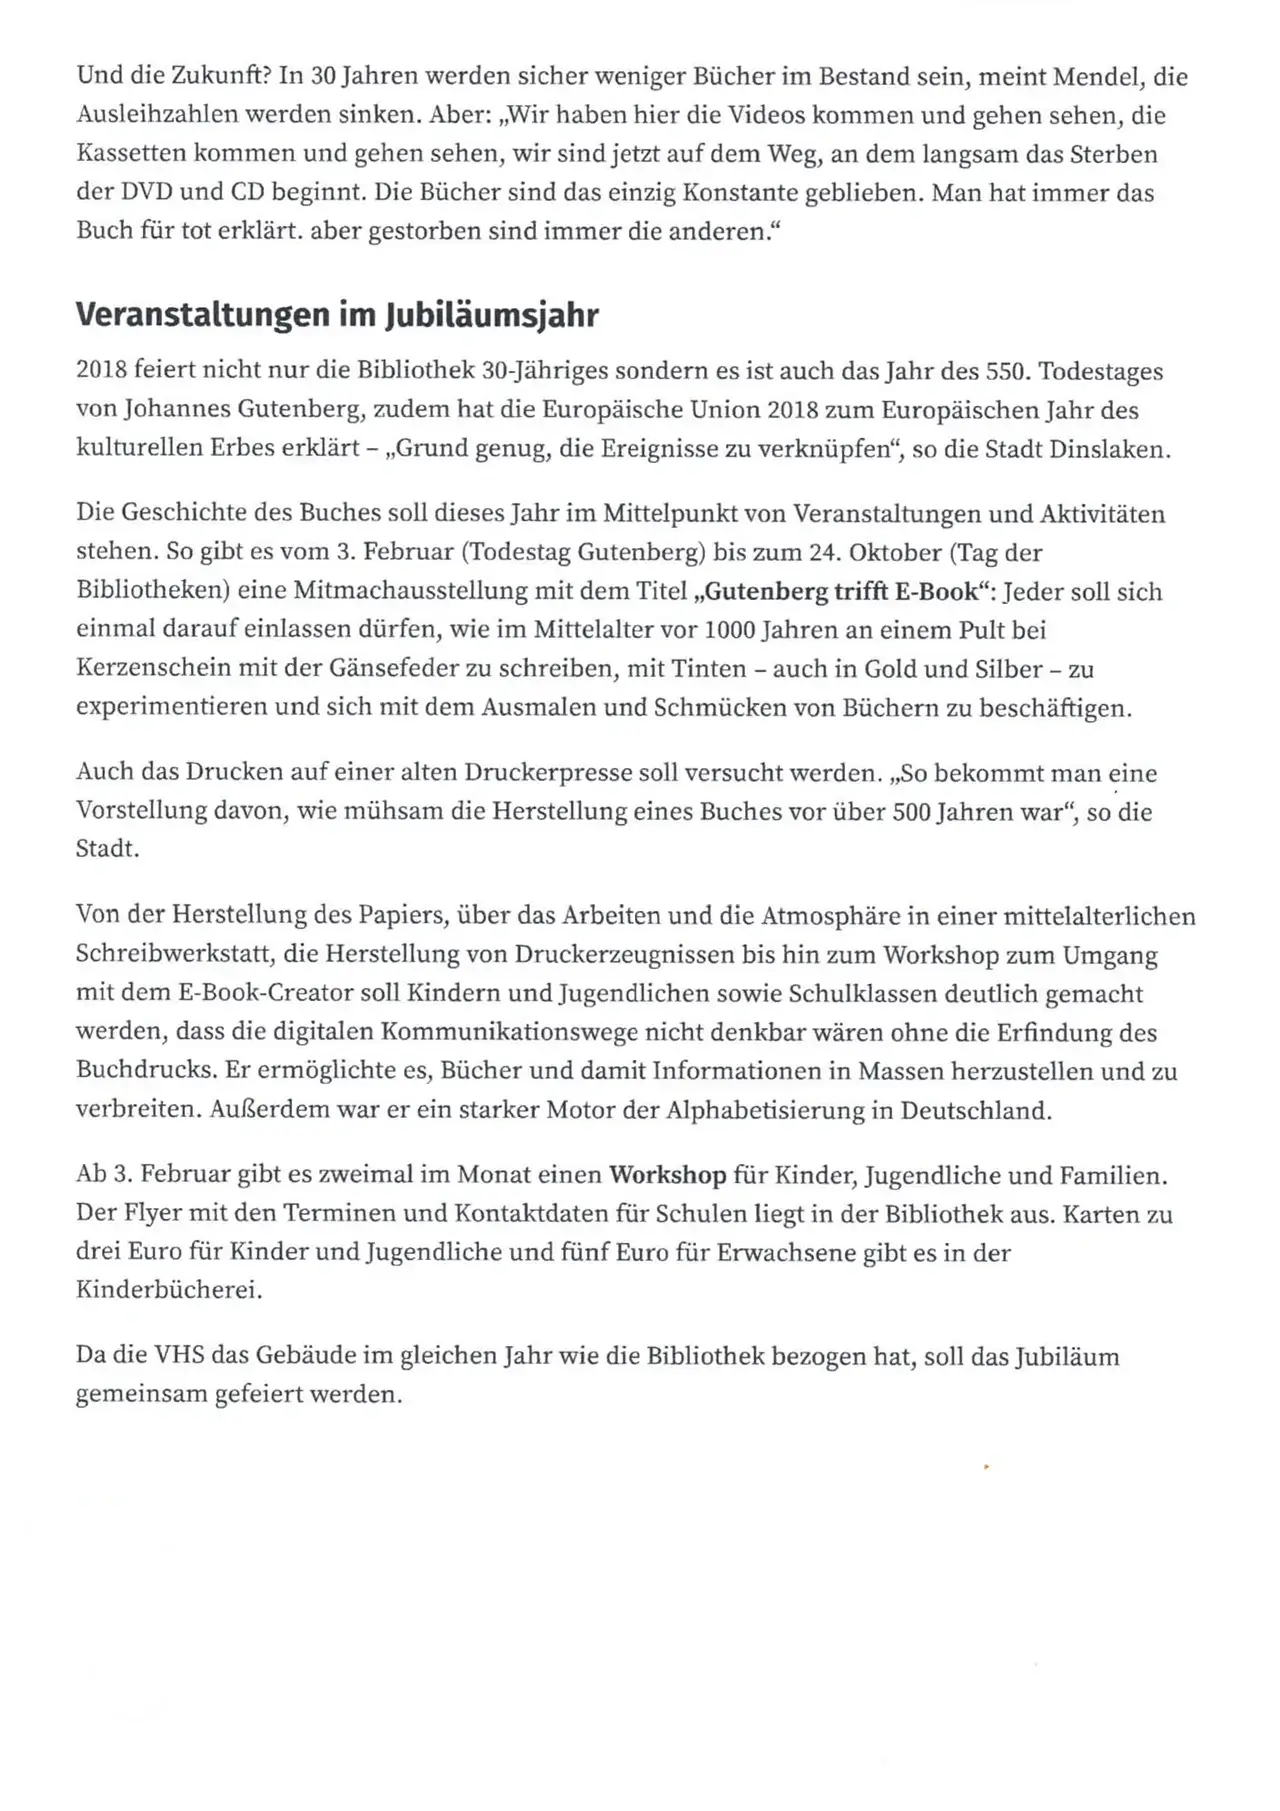 Presseartikel - NRZ - Was die Menschen in Dinslaken lesen - 9 Januar 2018 - Seite 2 von 3